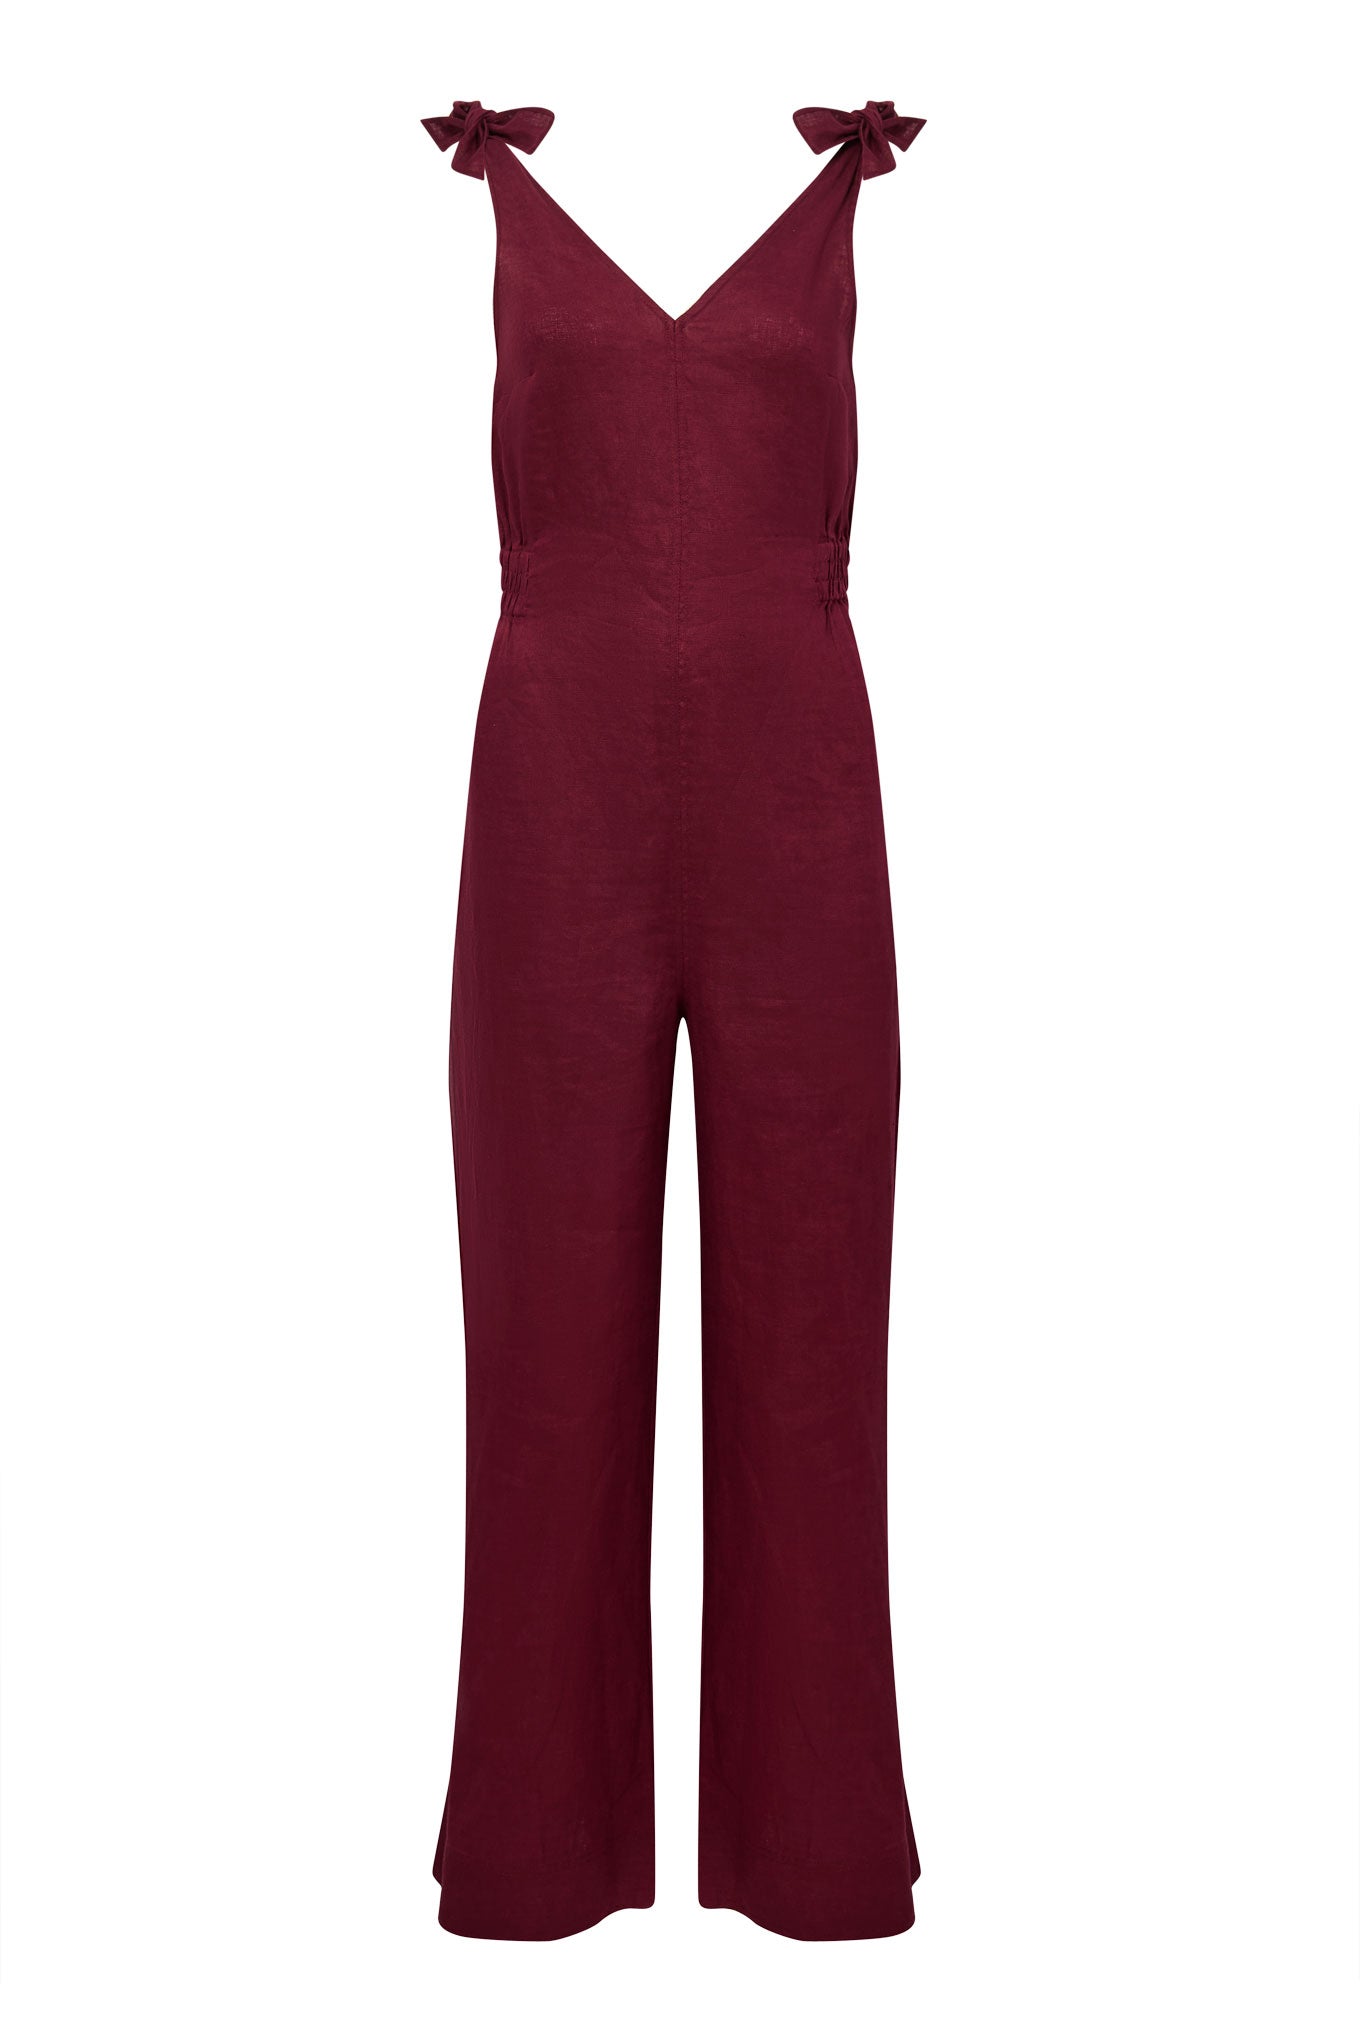 FLOSS - Linen berry Jumpsuit